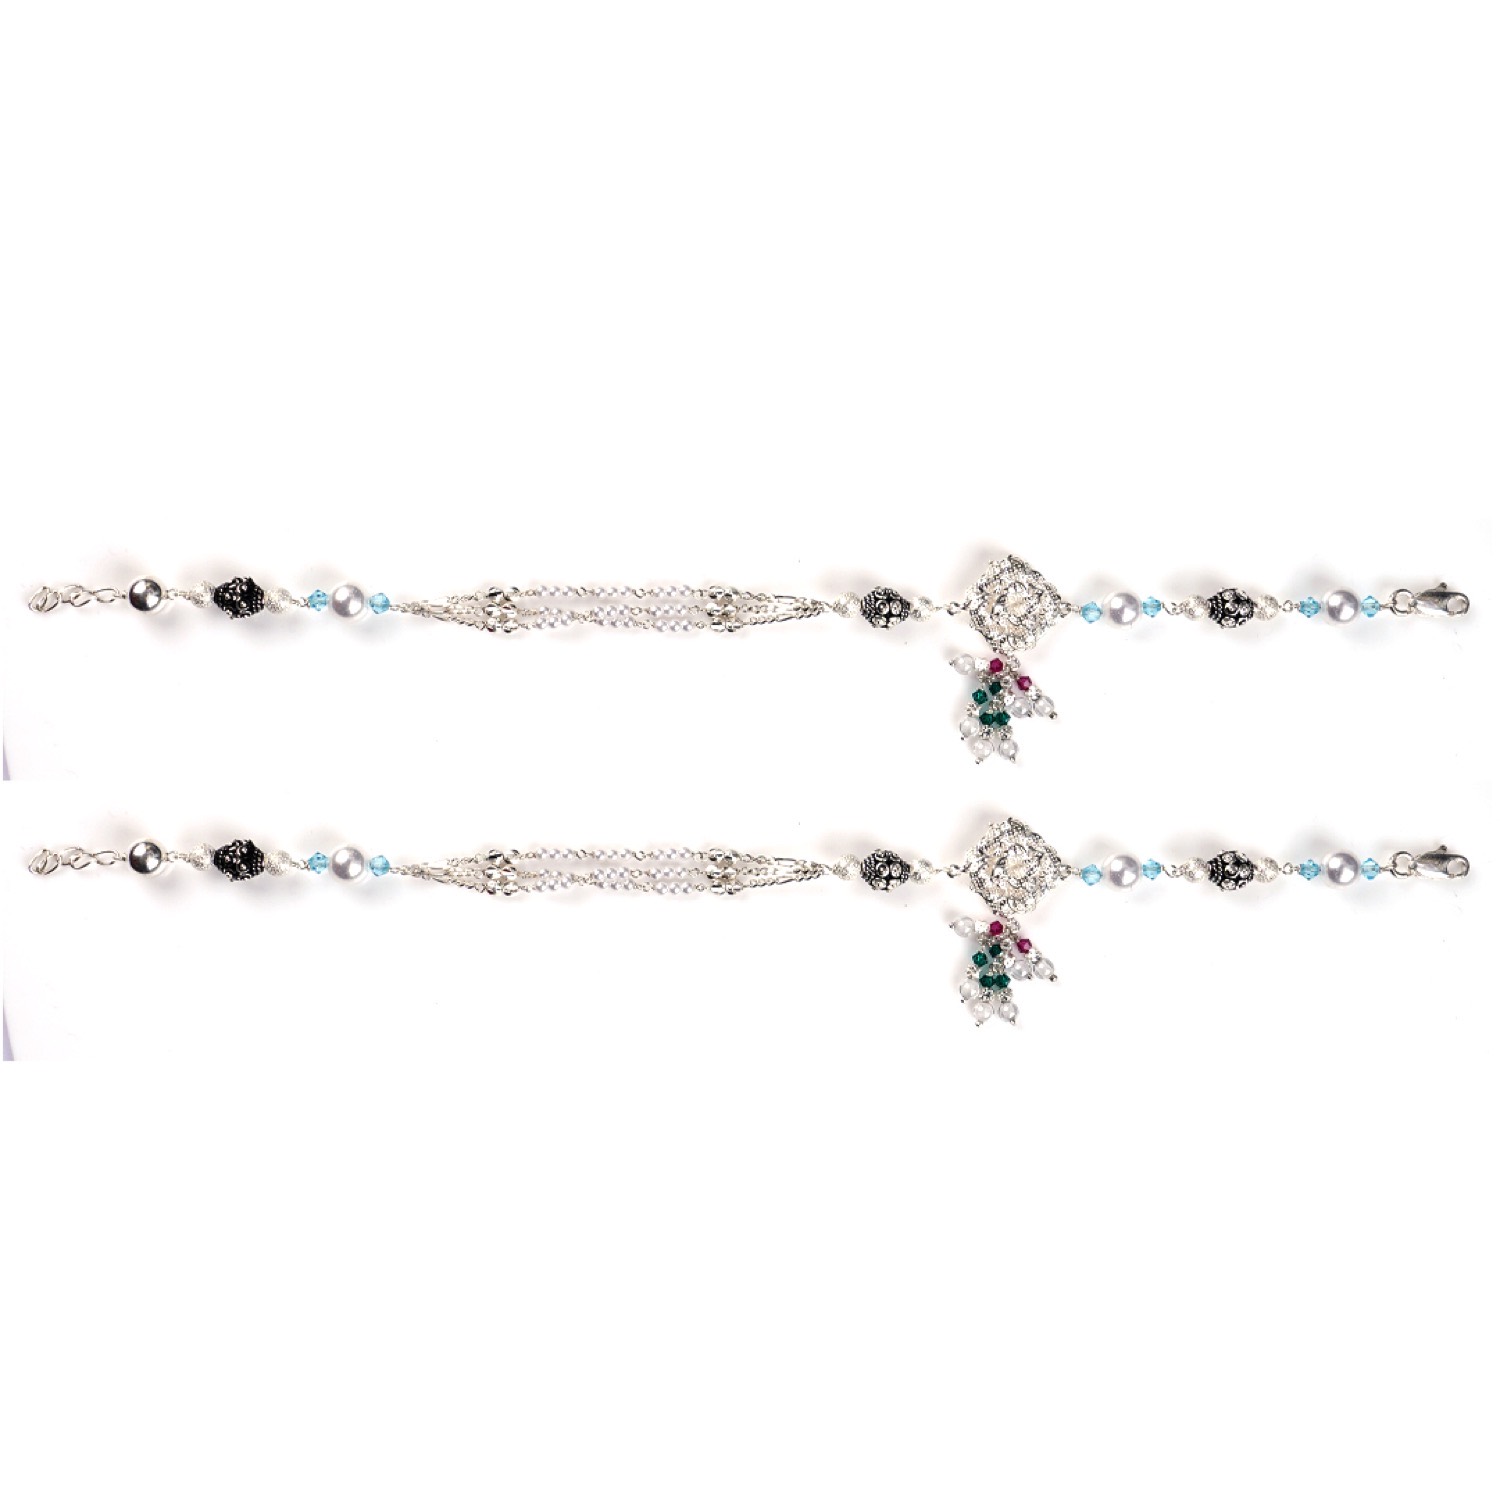 varam_anklets_072022_multicolour_stone_floral_design_silver_anklets_2-1